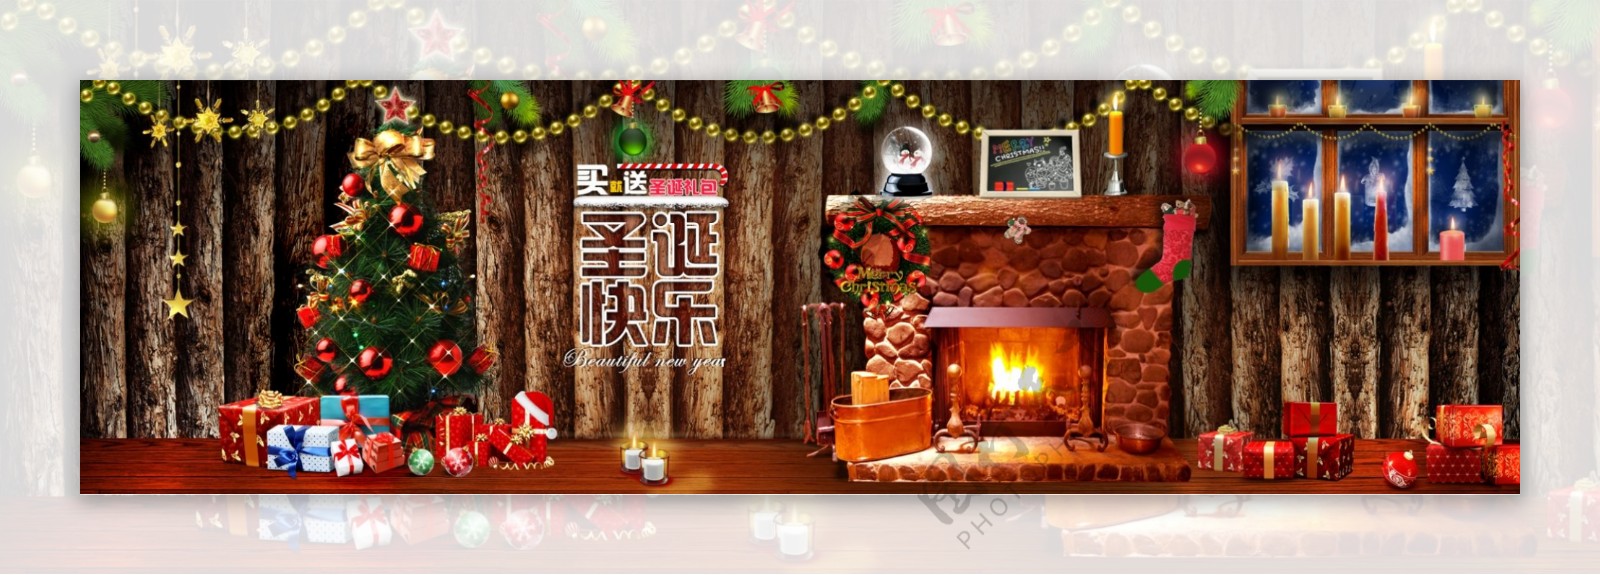 温馨小屋圣诞节促销海报图片